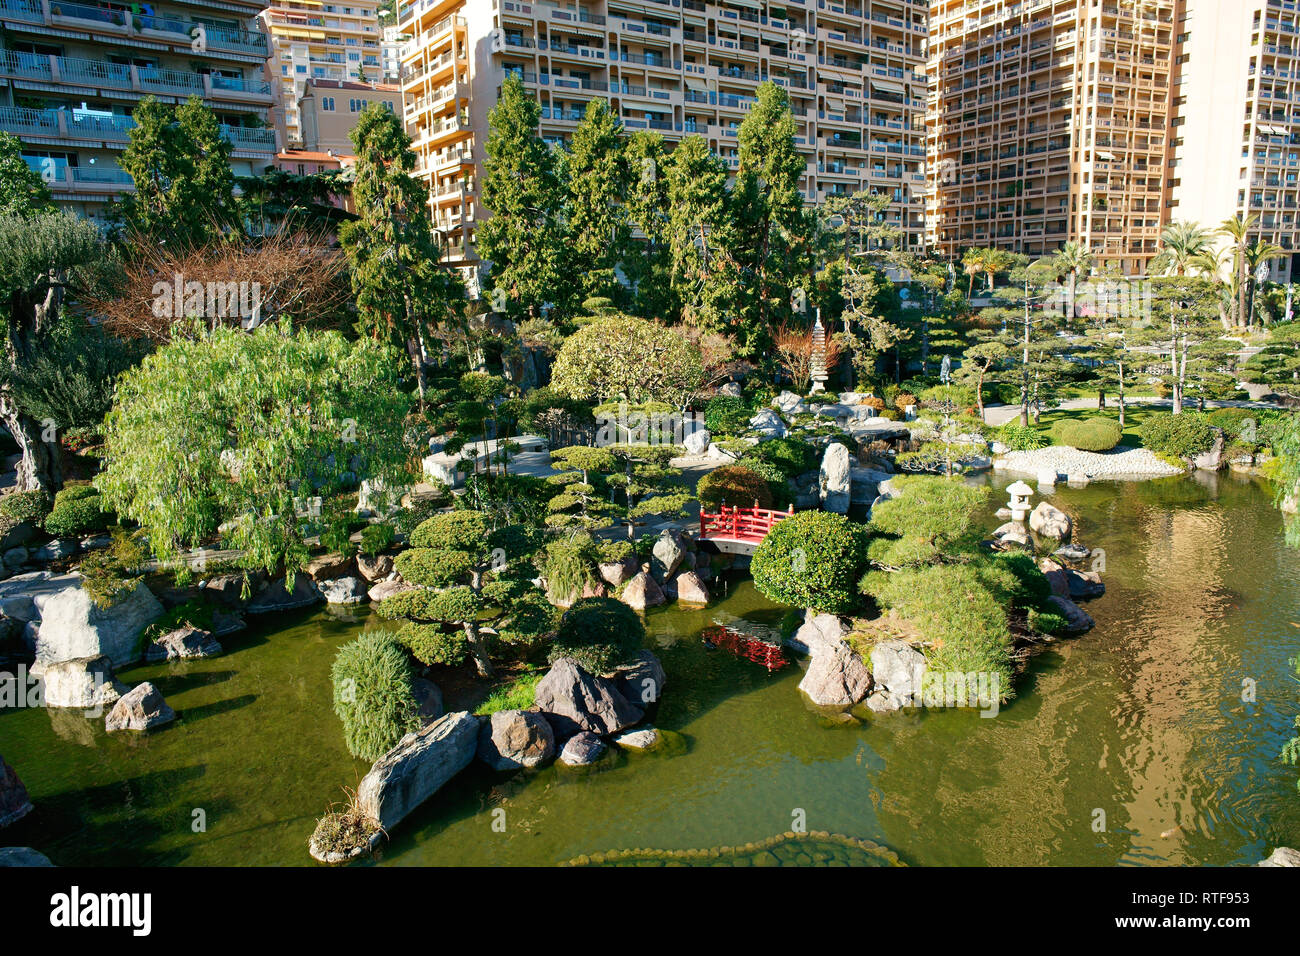 LUFTAUFNAHME von einem 6-Meter-Mast. Grüne Oase in einer städtischen Umgebung. Japanischer Garten, Bezirk Larvotto, Fürstentum Monaco. Stockfoto